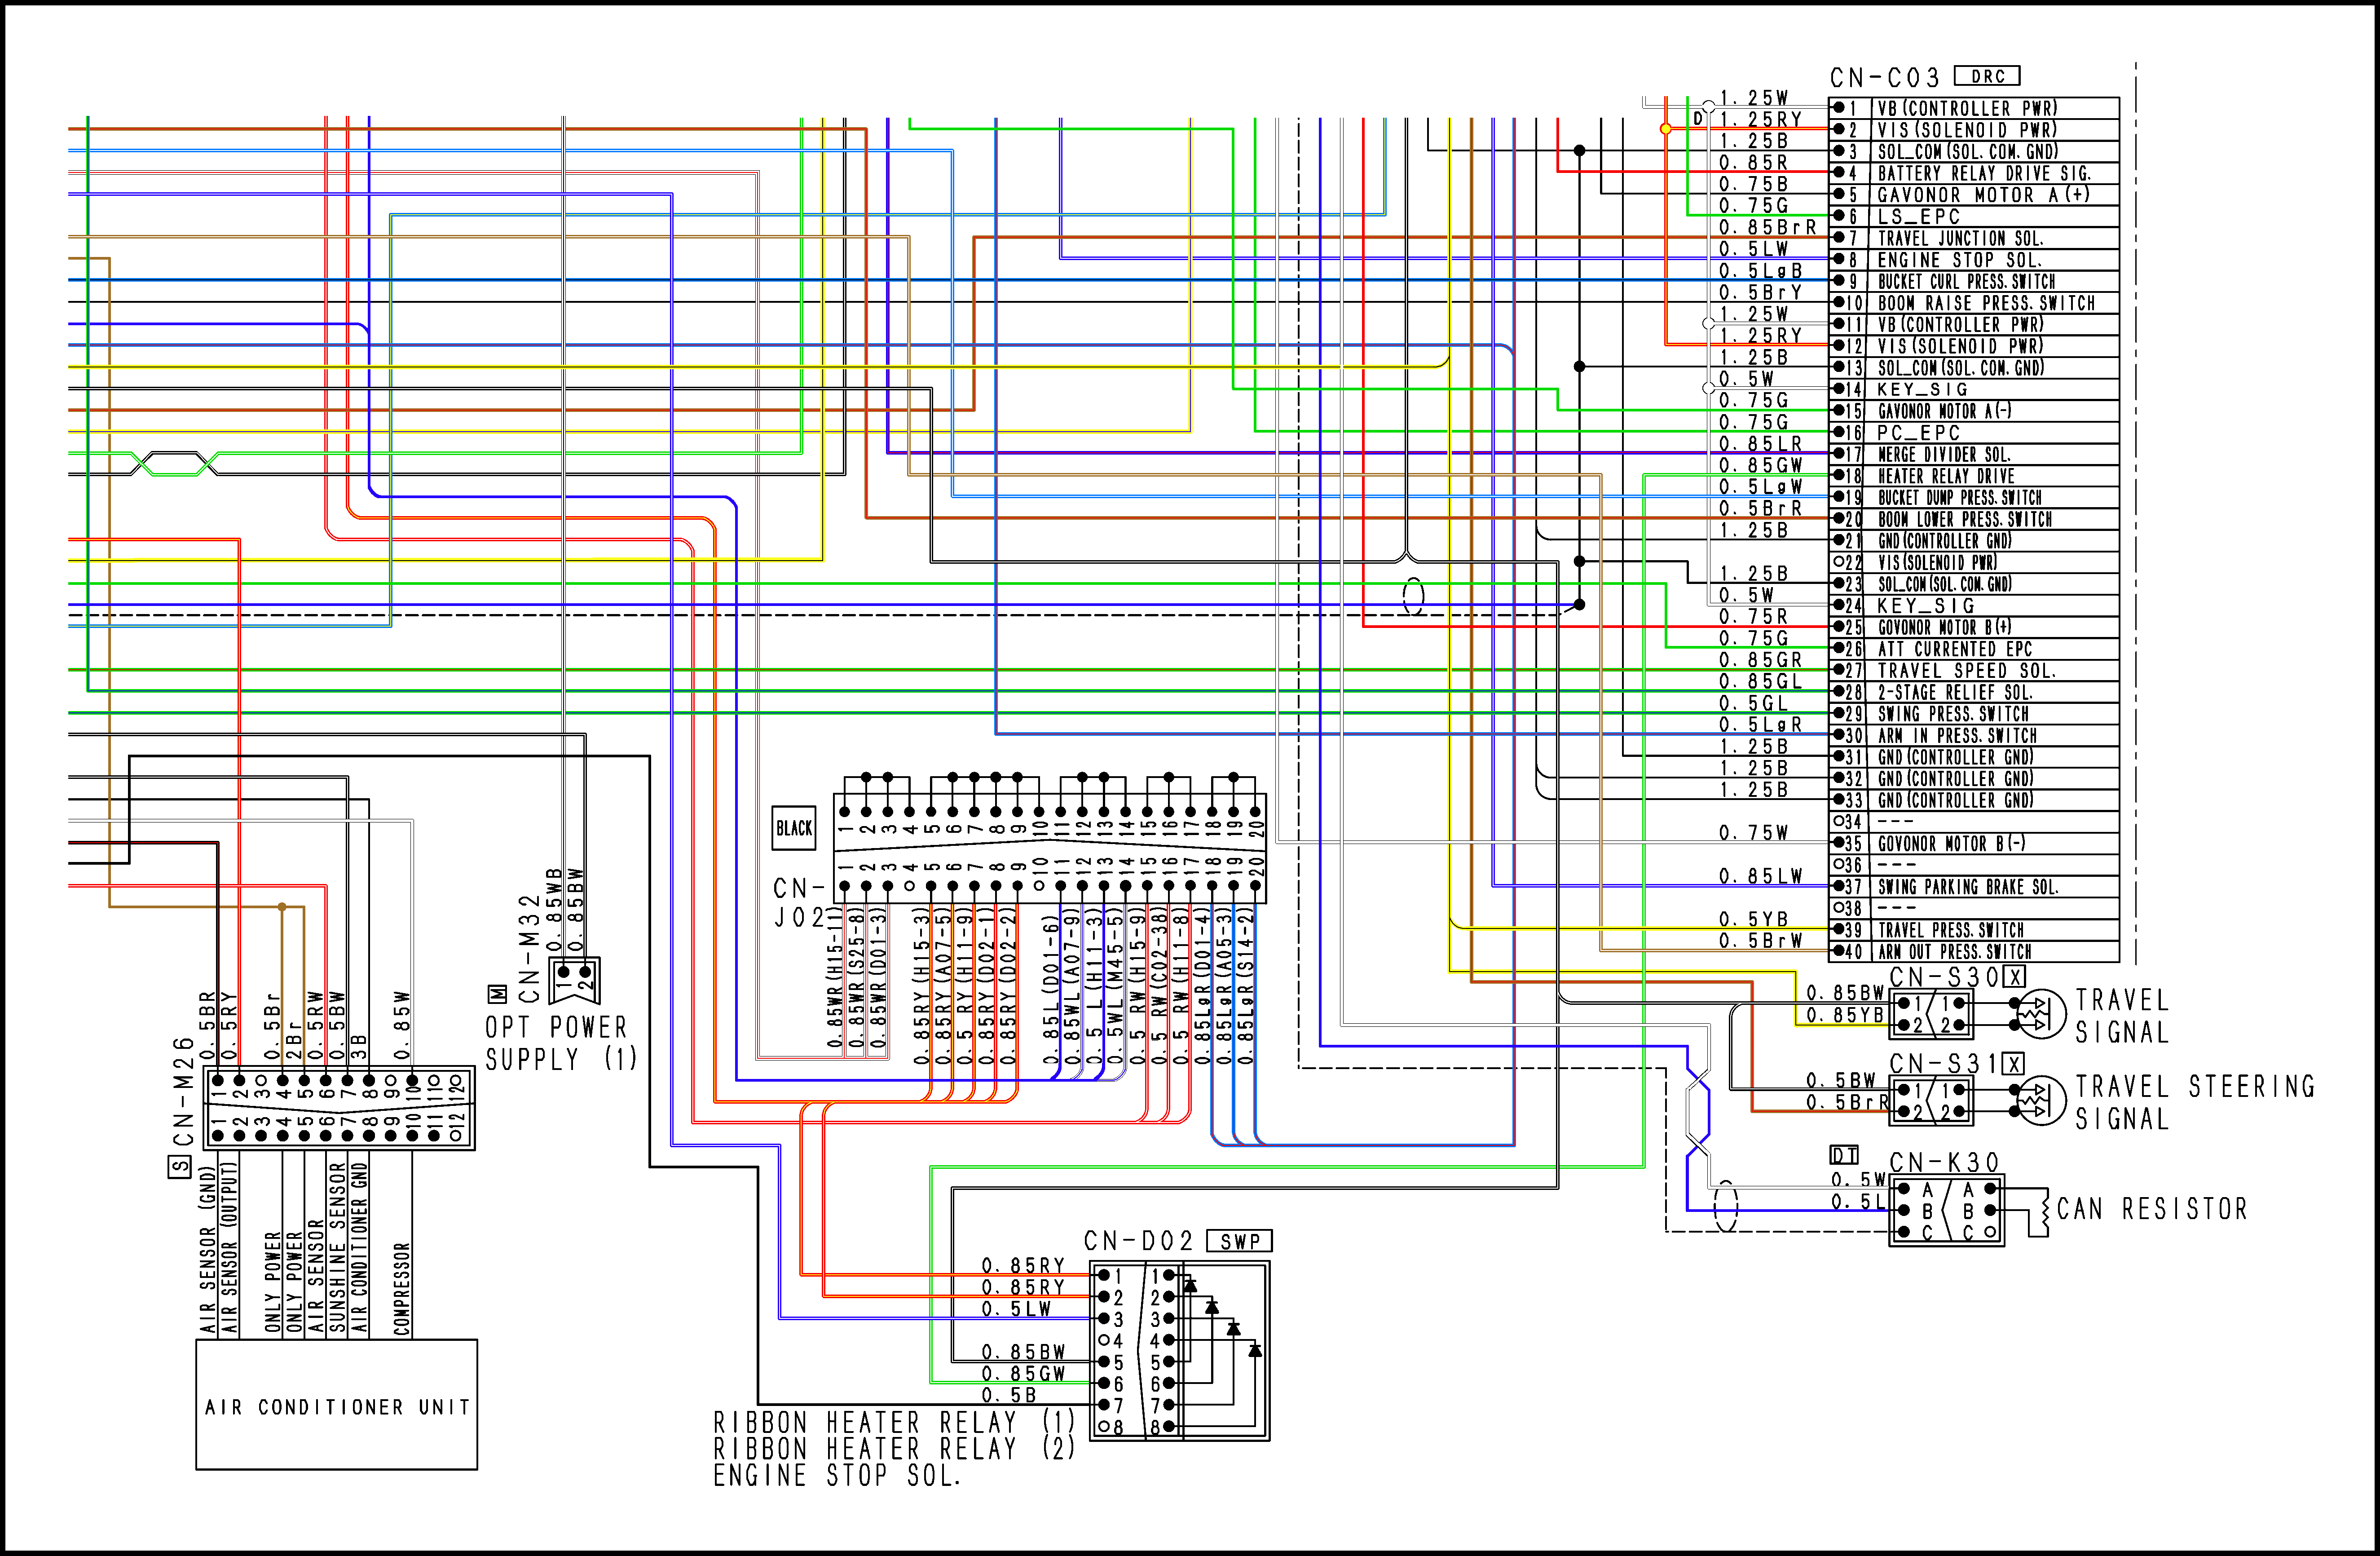 نقشه رنگی (شاپ منوال) برق بیل مکانیکی کوماتسو 300 خط 7